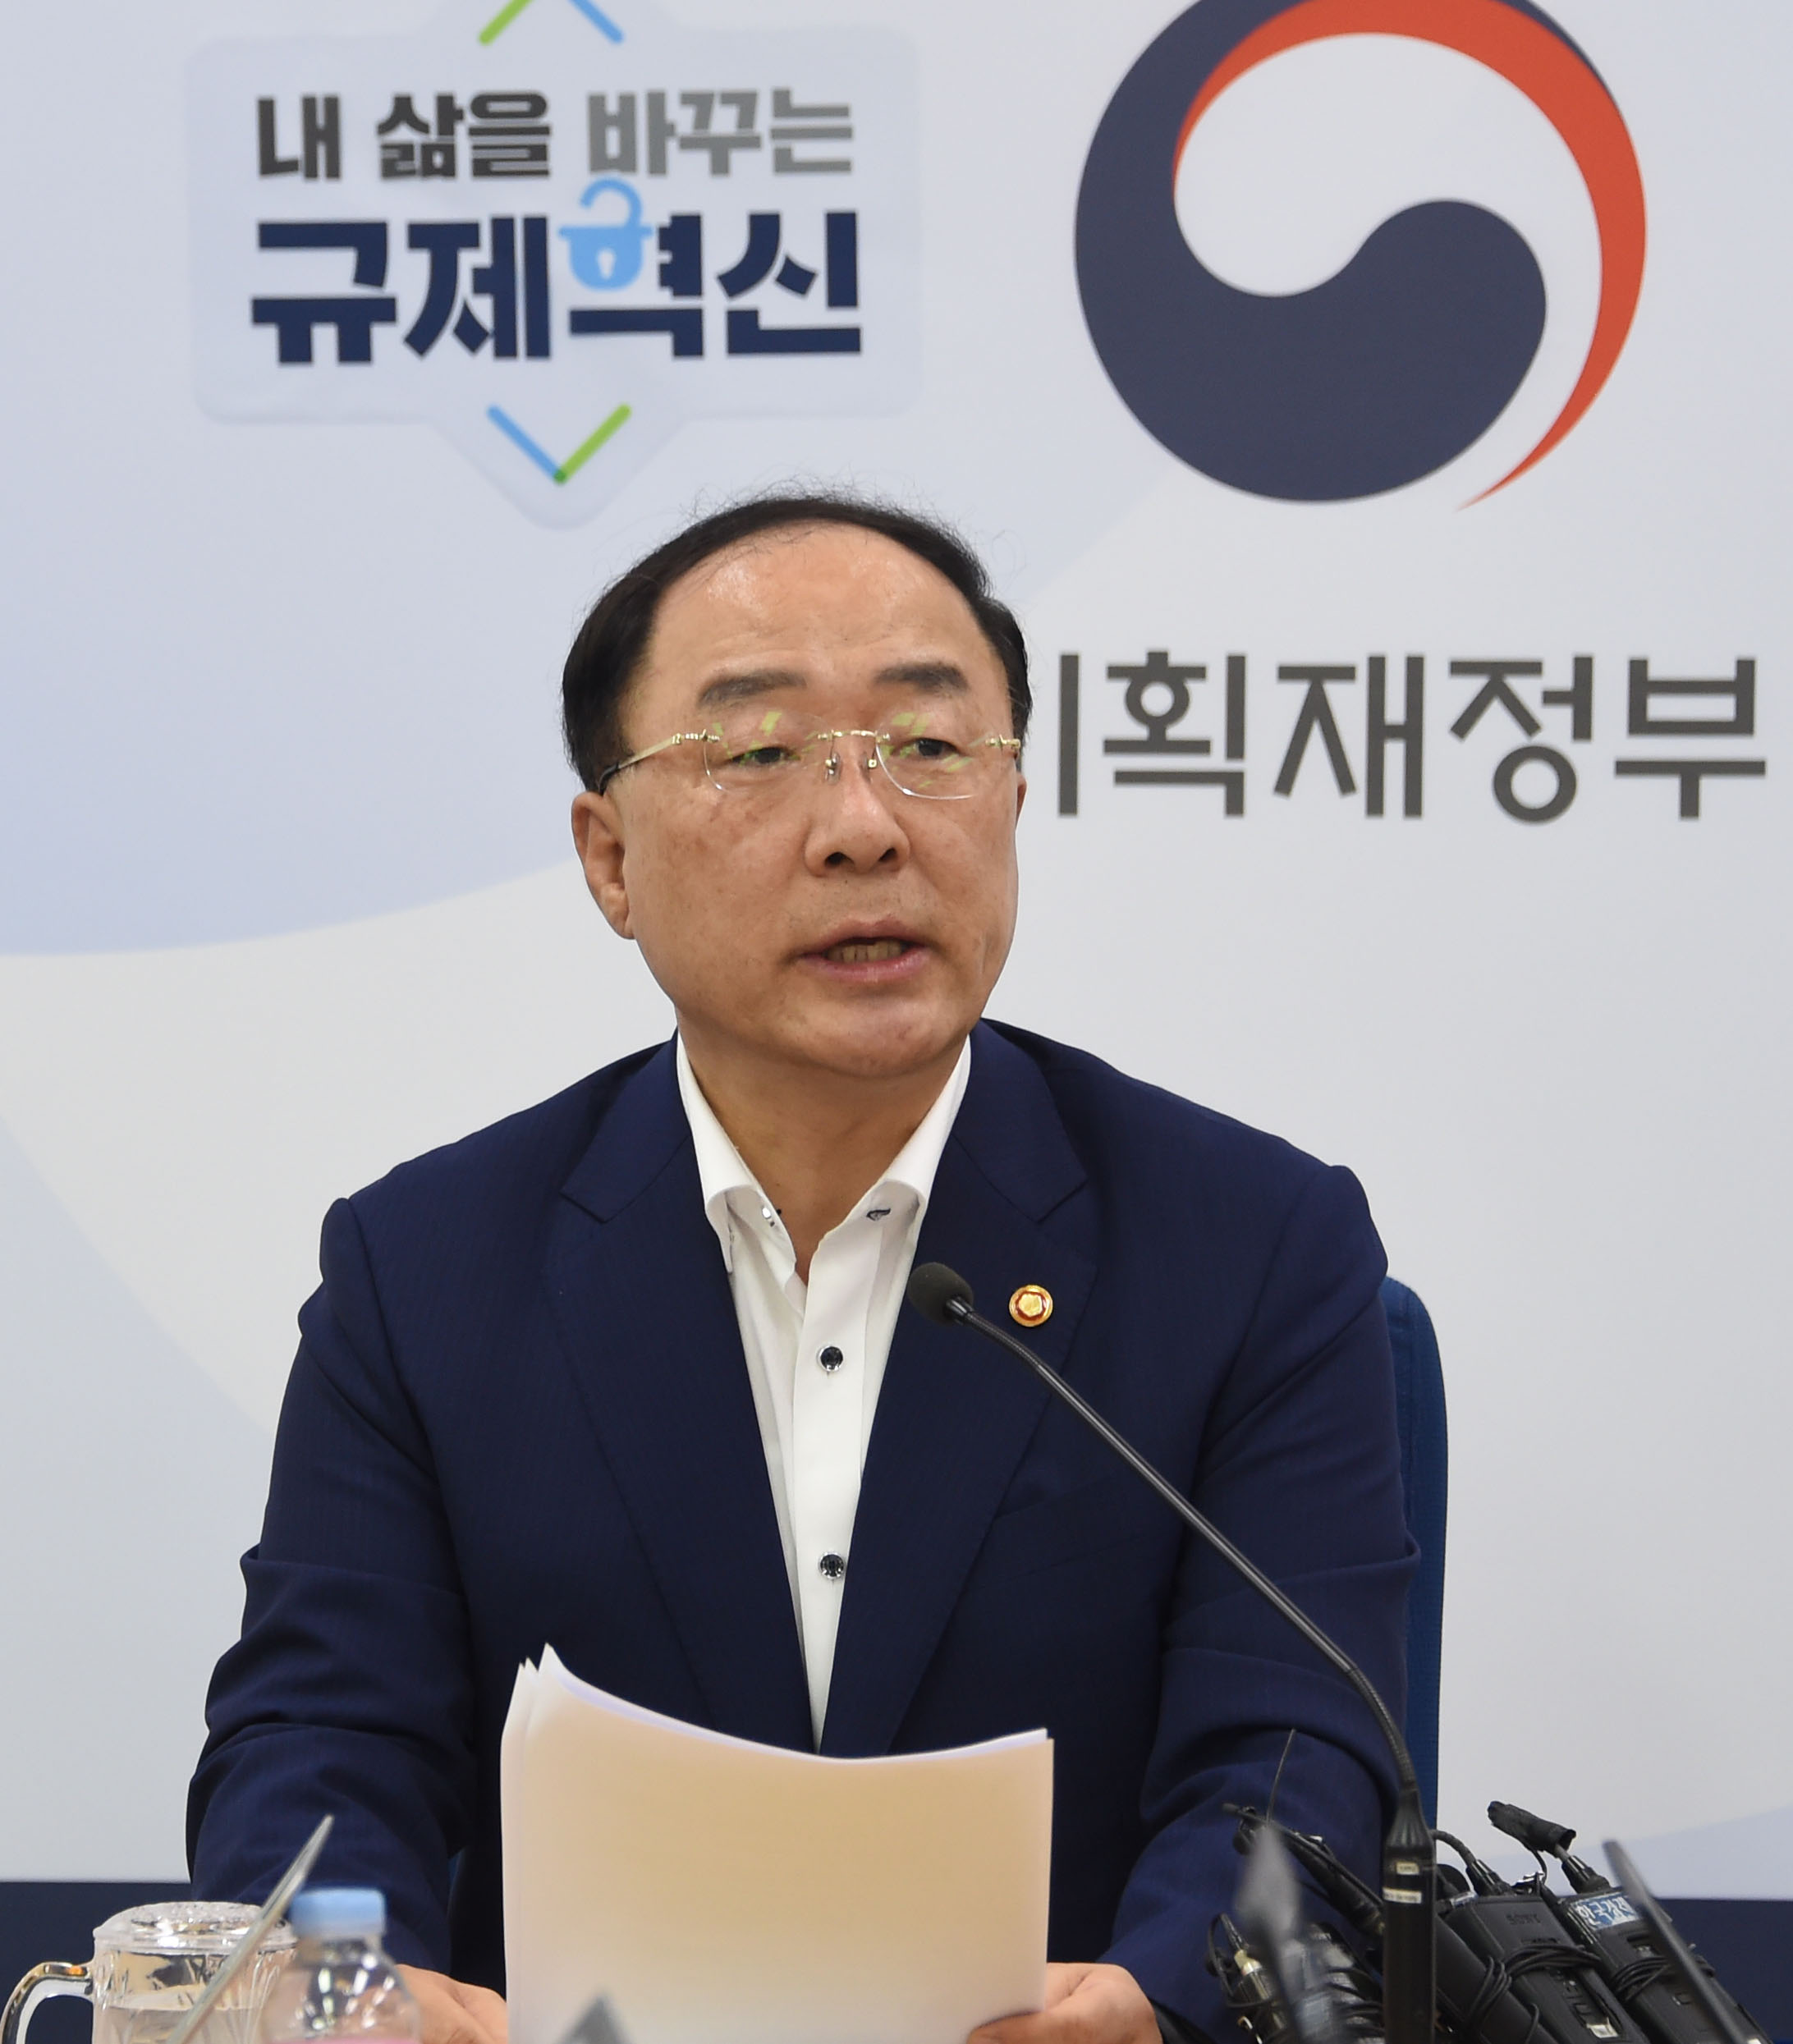 홍남기 경제부총리 겸 기획재정부 장관